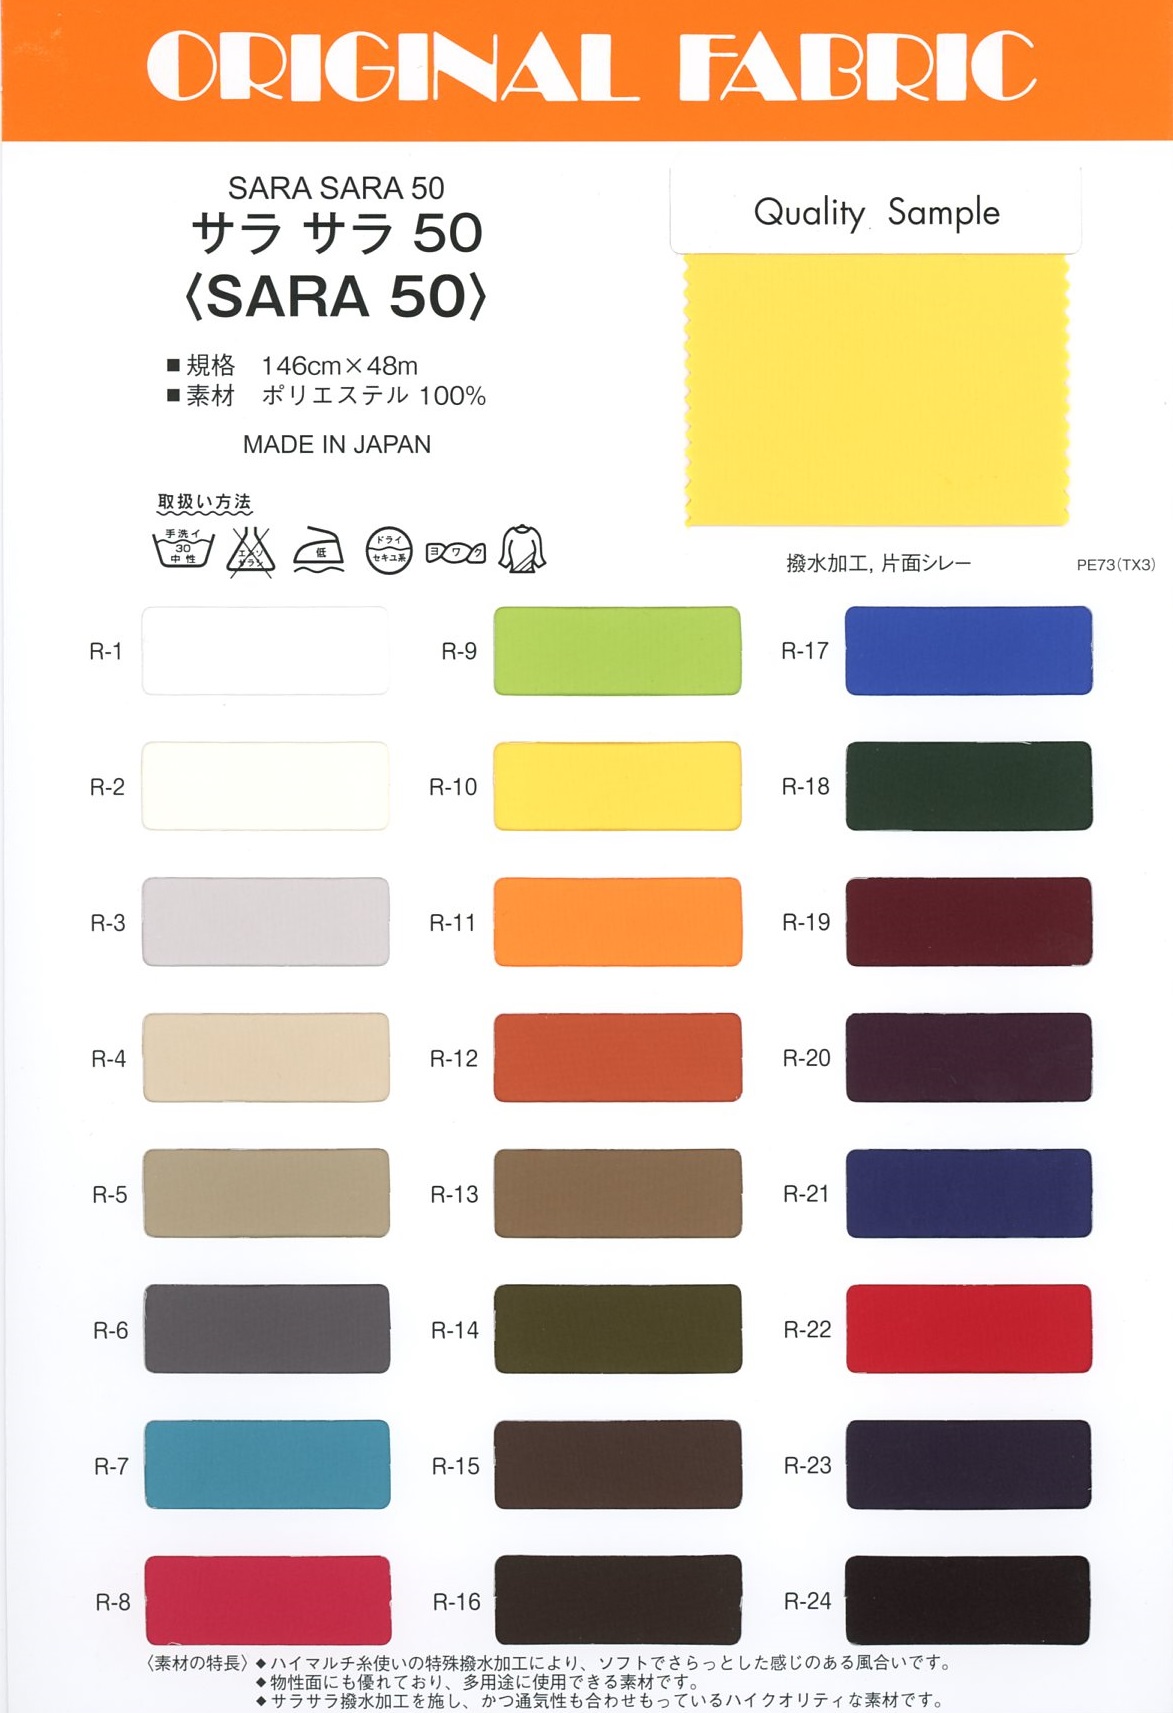 SARA50 Sara Sara 50[Têxtil / Tecido] Masuda